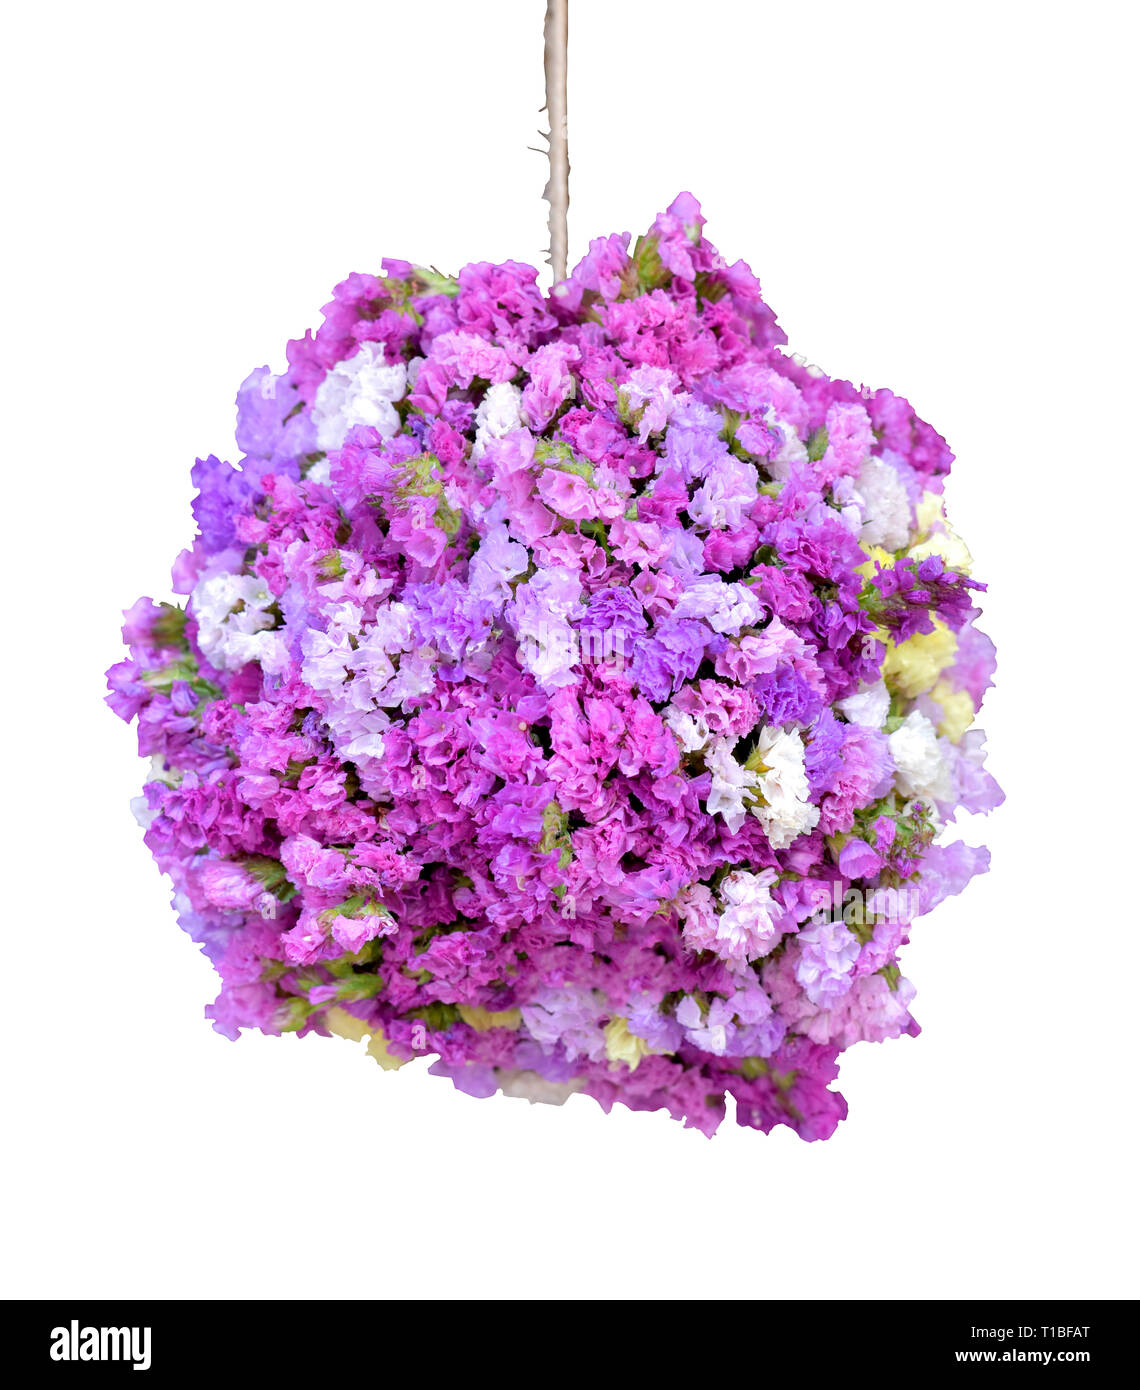 Forma sferica statice viola bouquet di fiori isolati su sfondo bianco, splendido design di appendere la sfera di fiori bouquet di forma decorativa per andare in Foto Stock